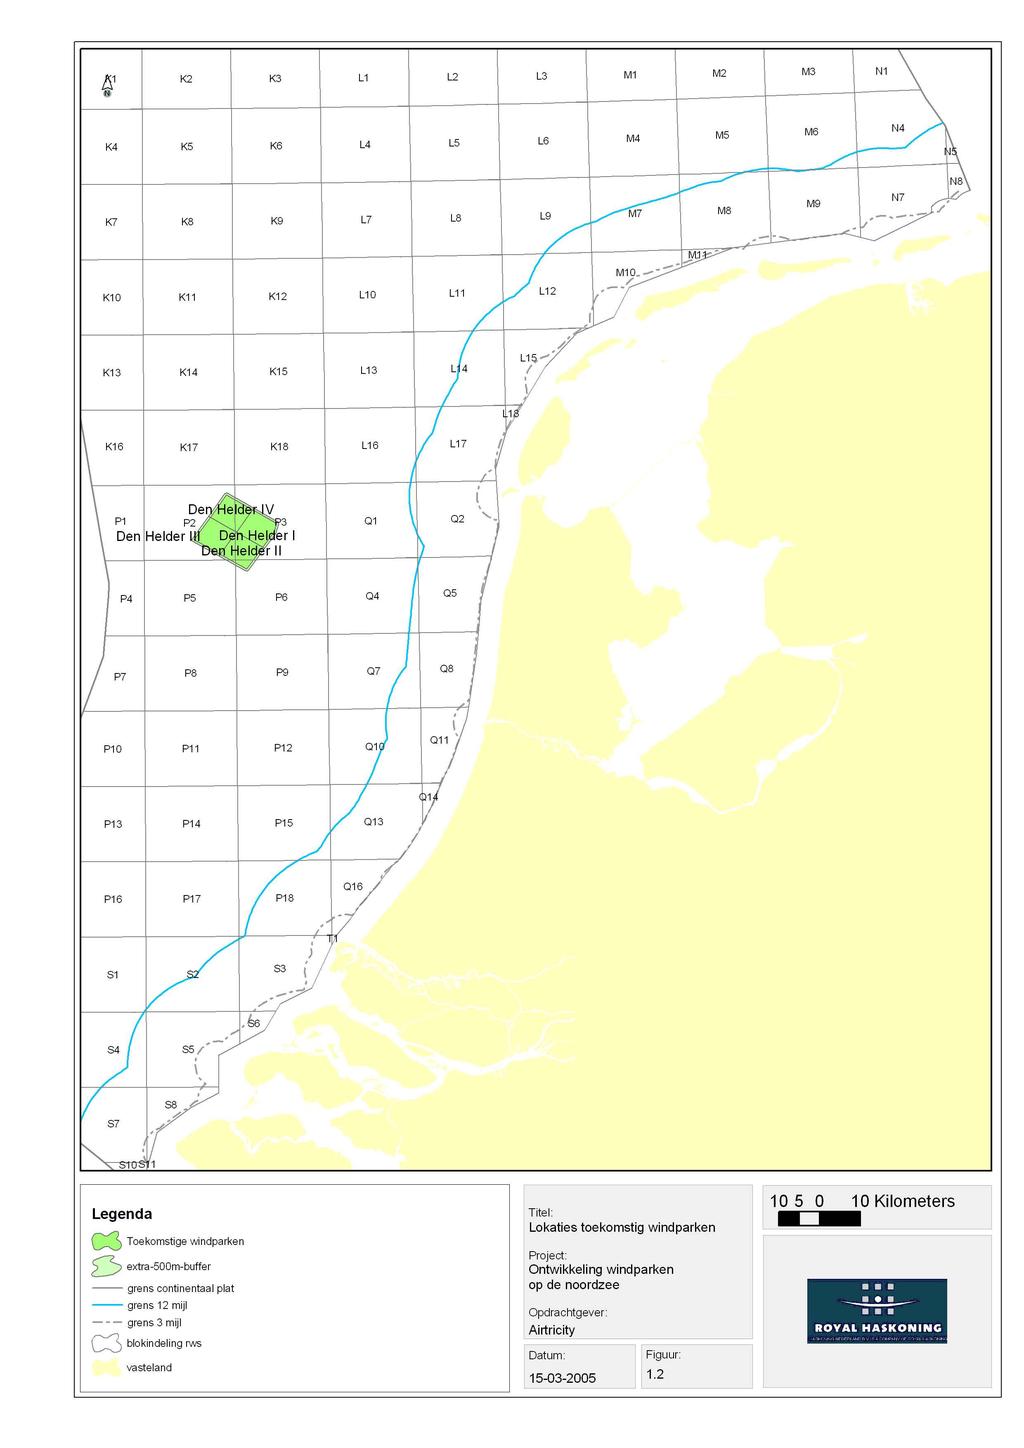 Figuur 1.2: Mogelijke locaties voor windparken op de Noordzee (Airtricity, 2005).